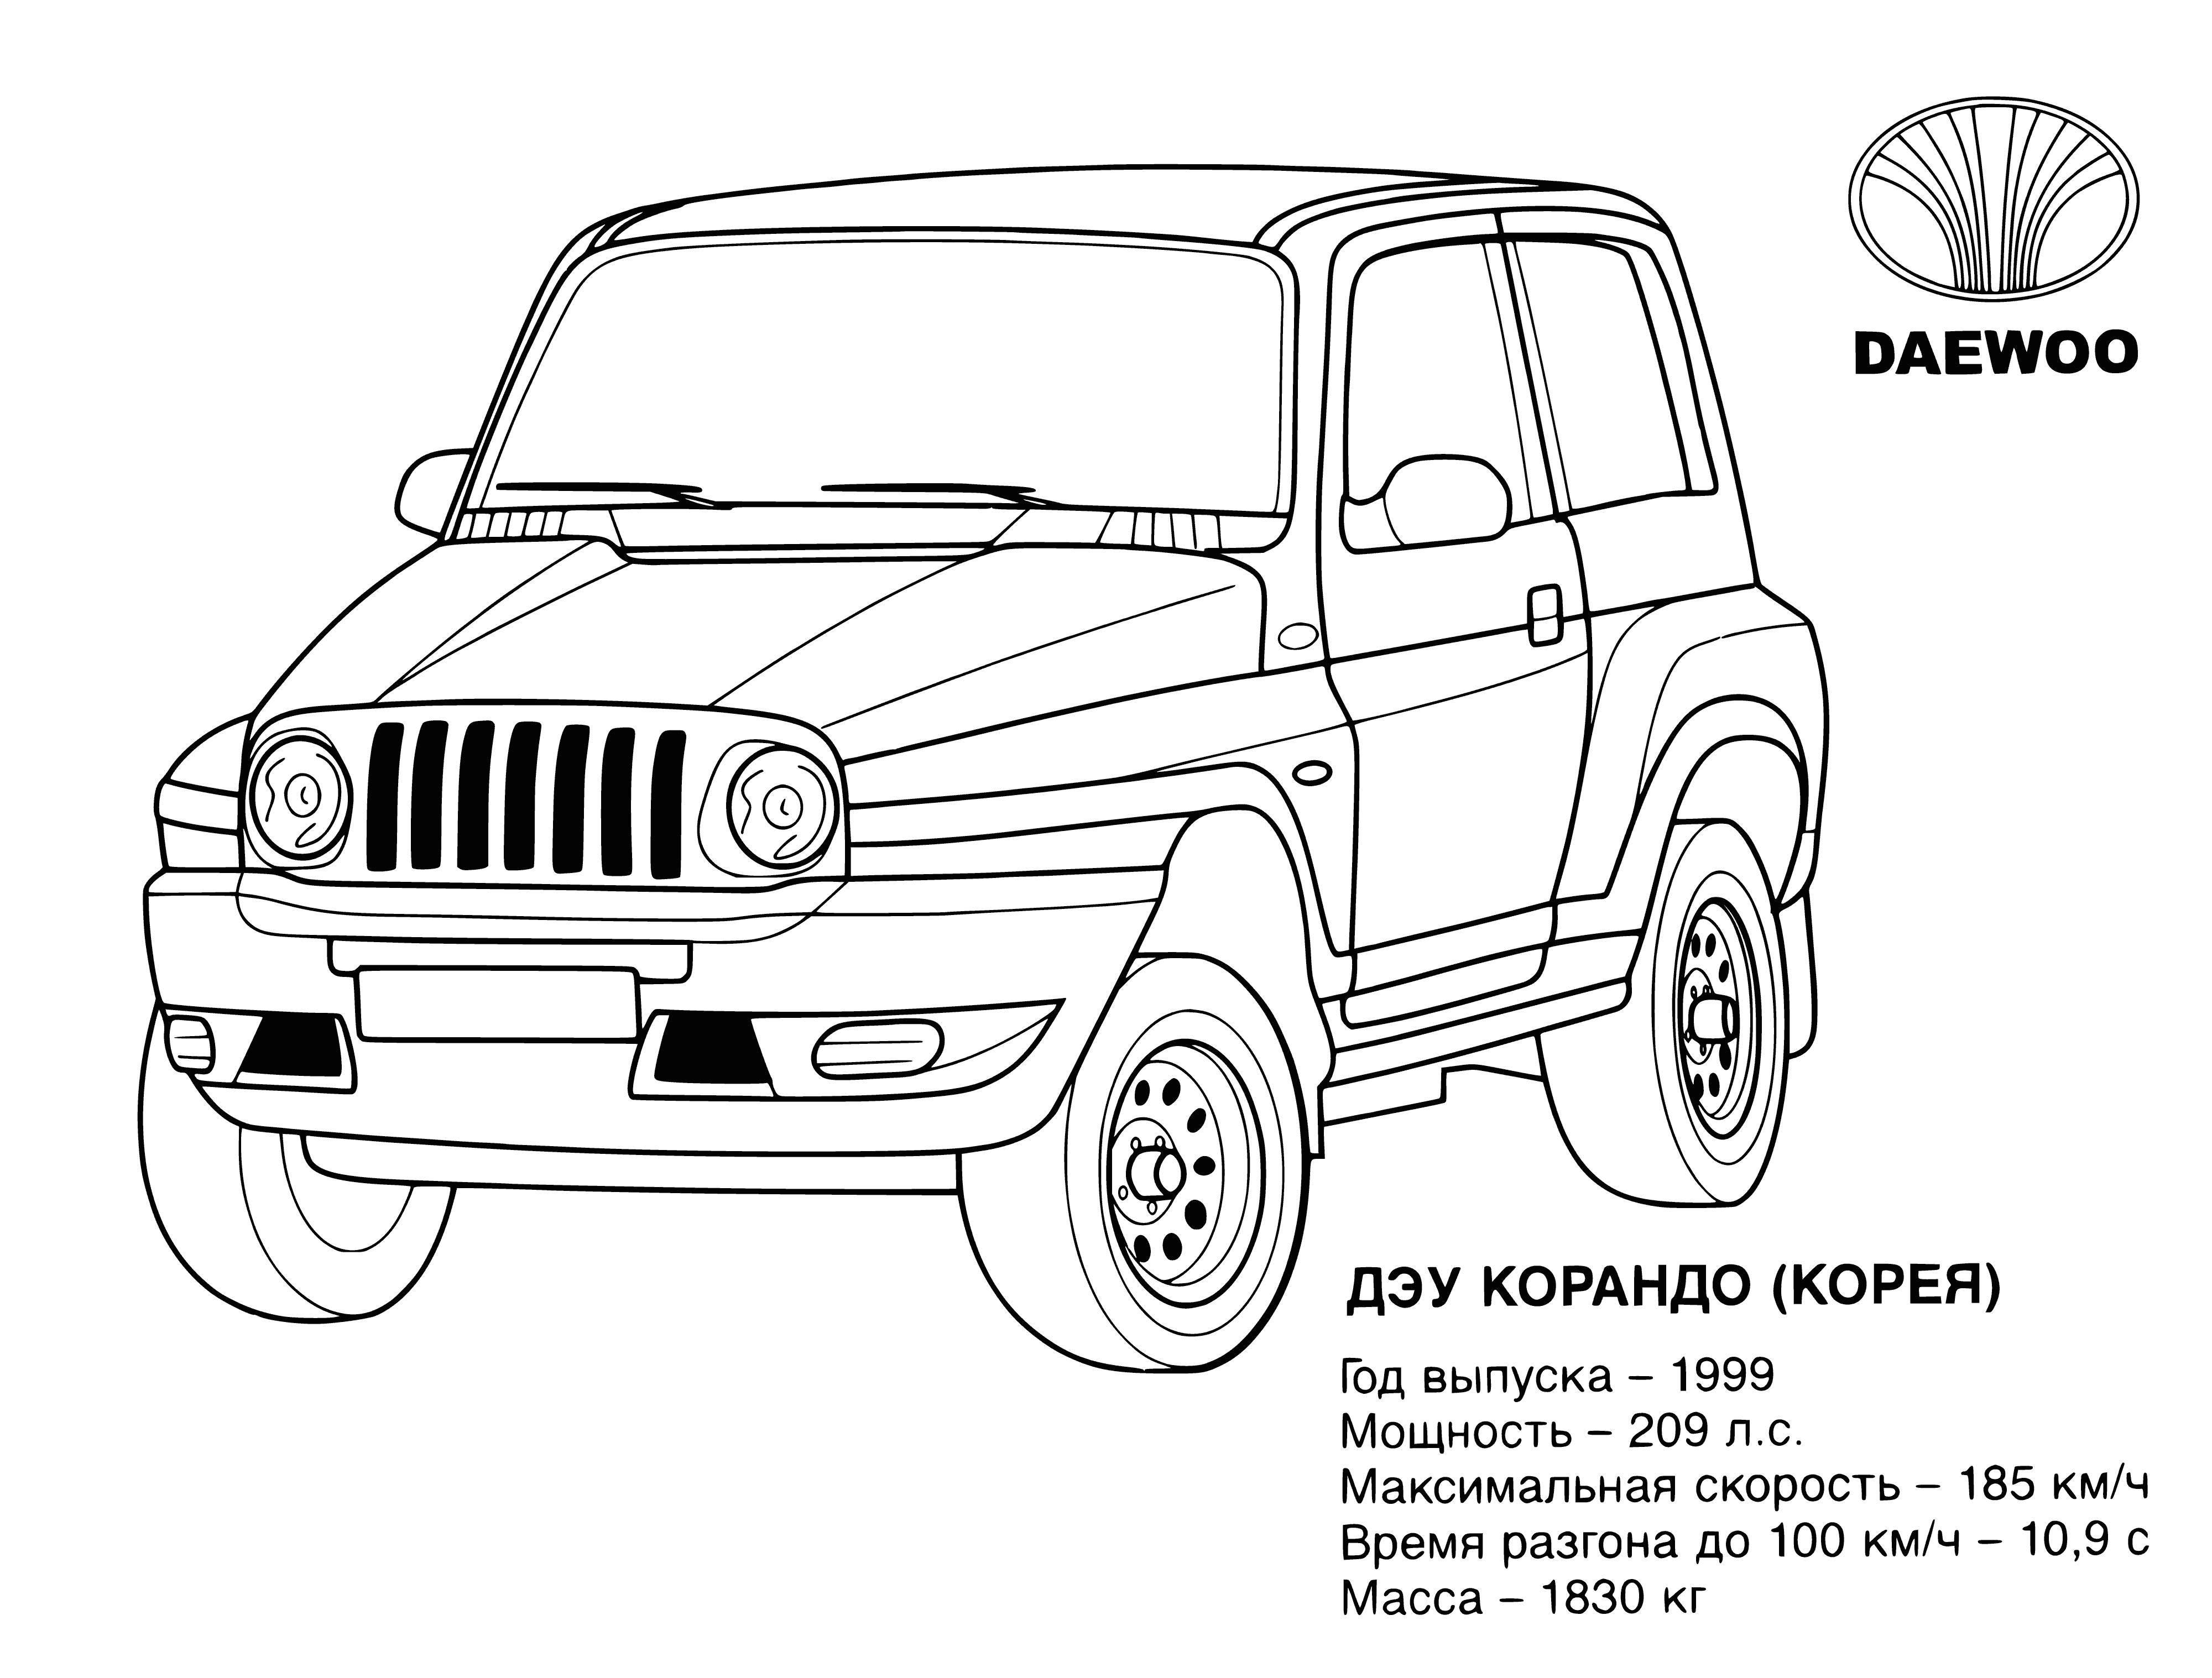 Jeep (Kore) boyama sayfası